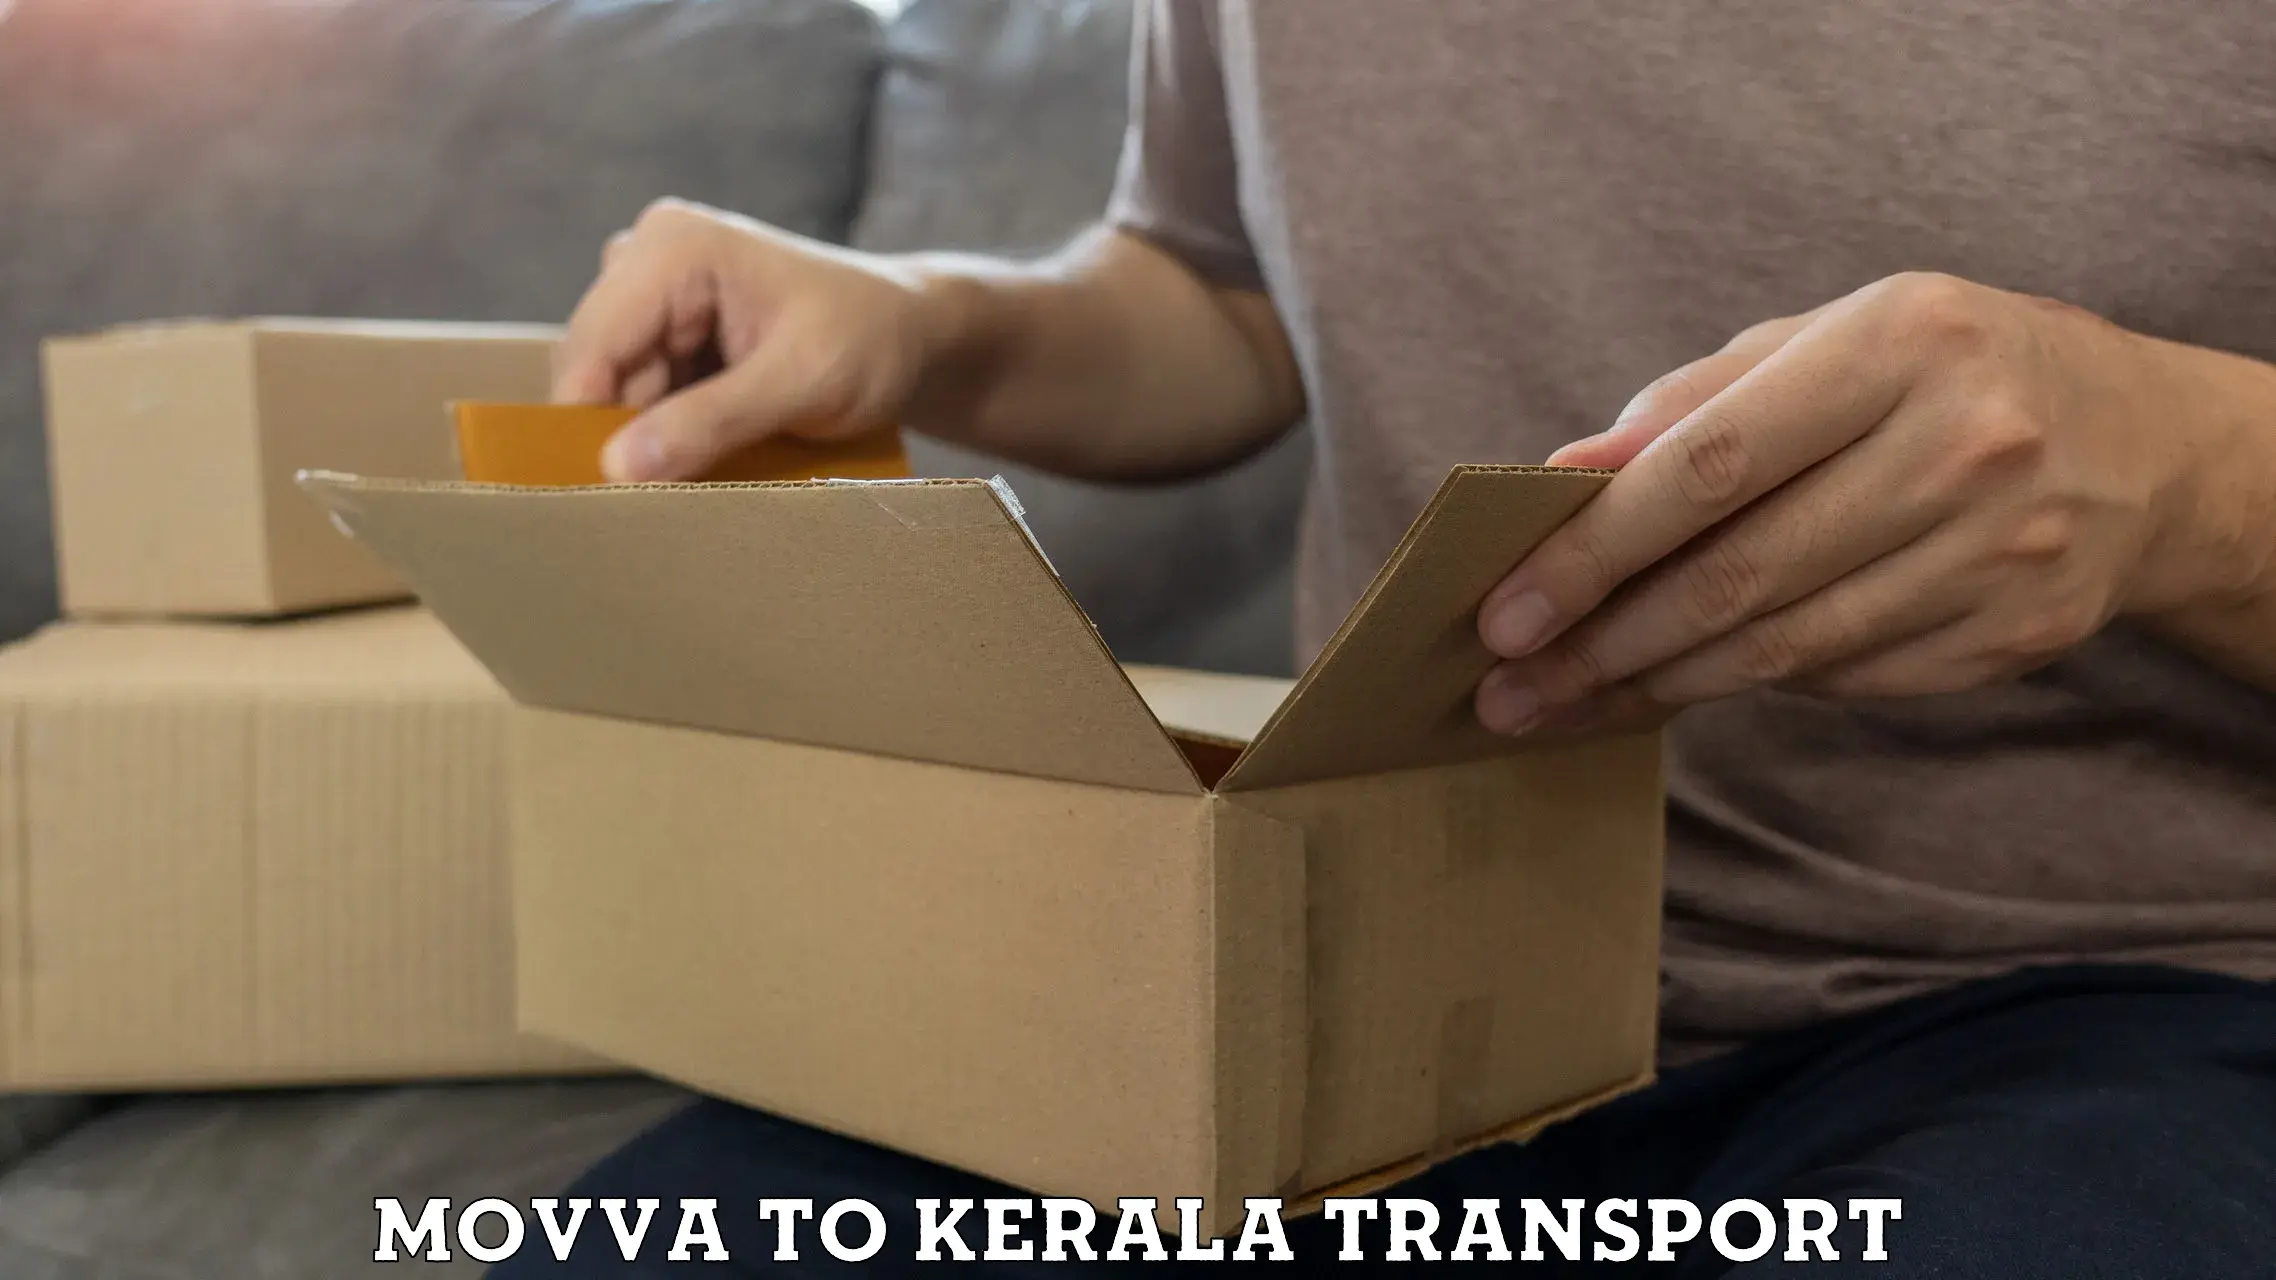 Lorry transport service Movva to Kottarakkara